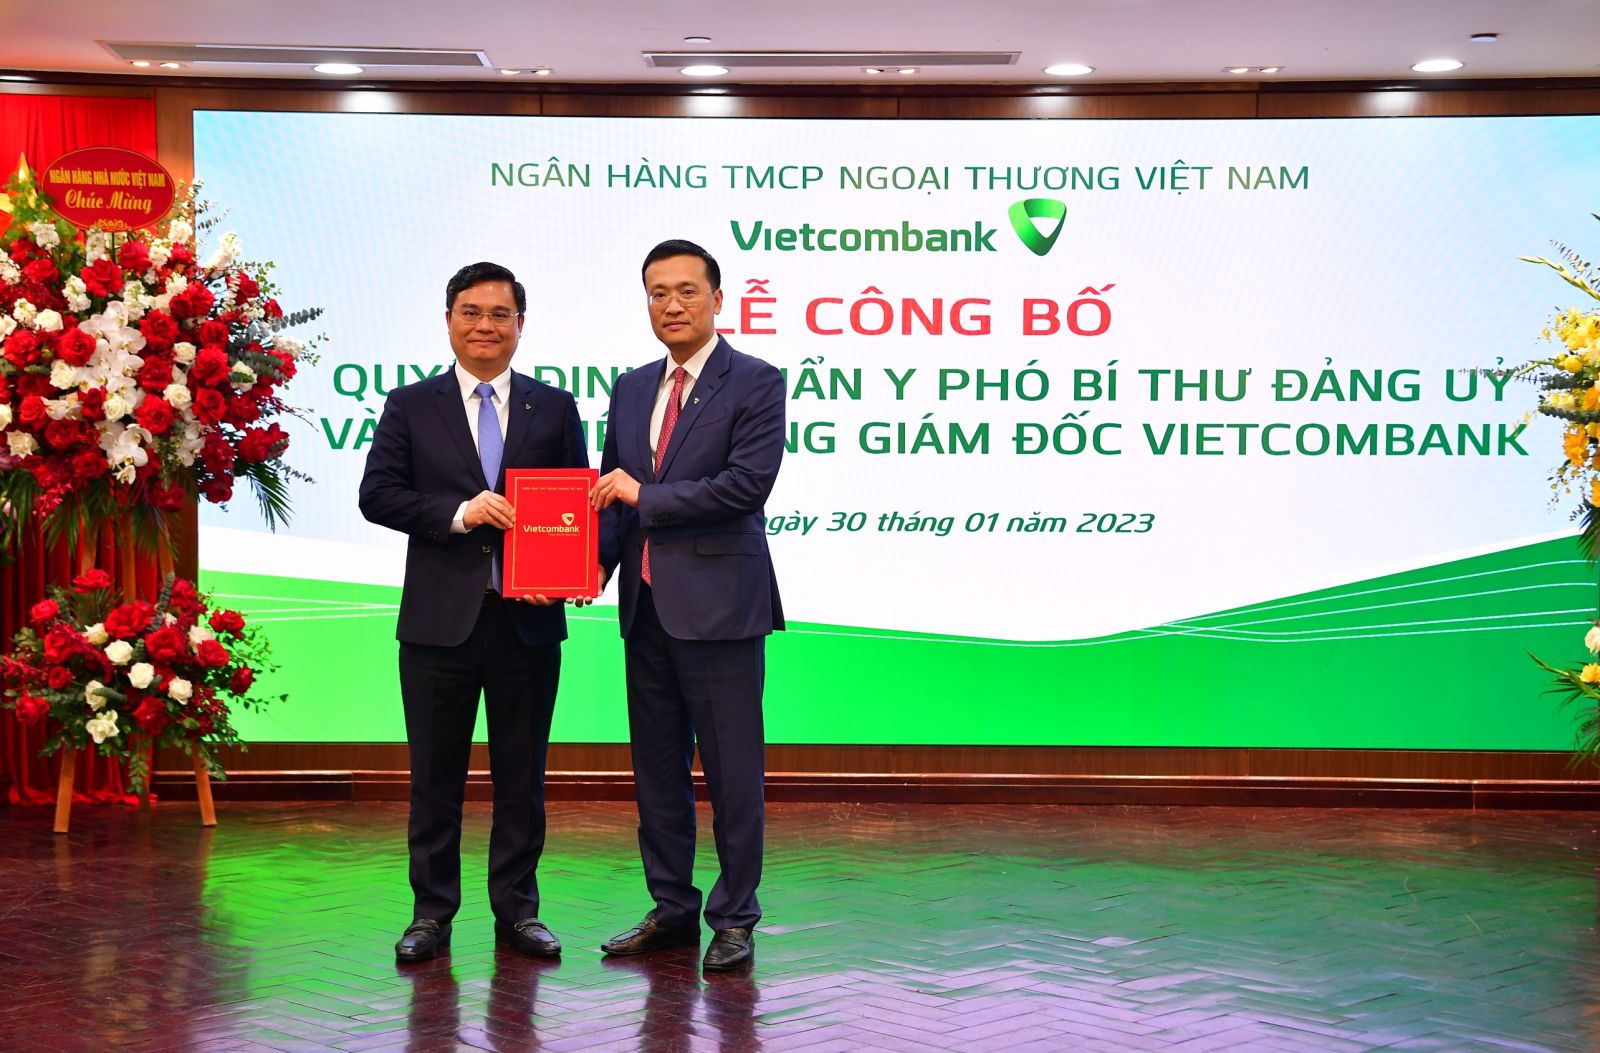 Phạm Quang Dũng - Chủ tịch HĐQT Vietcombank (bên phải) trao quyết định bổ nhiệm Tổng giám đốc Vietcombank cho ông Nguyễn Thanh Tùng 